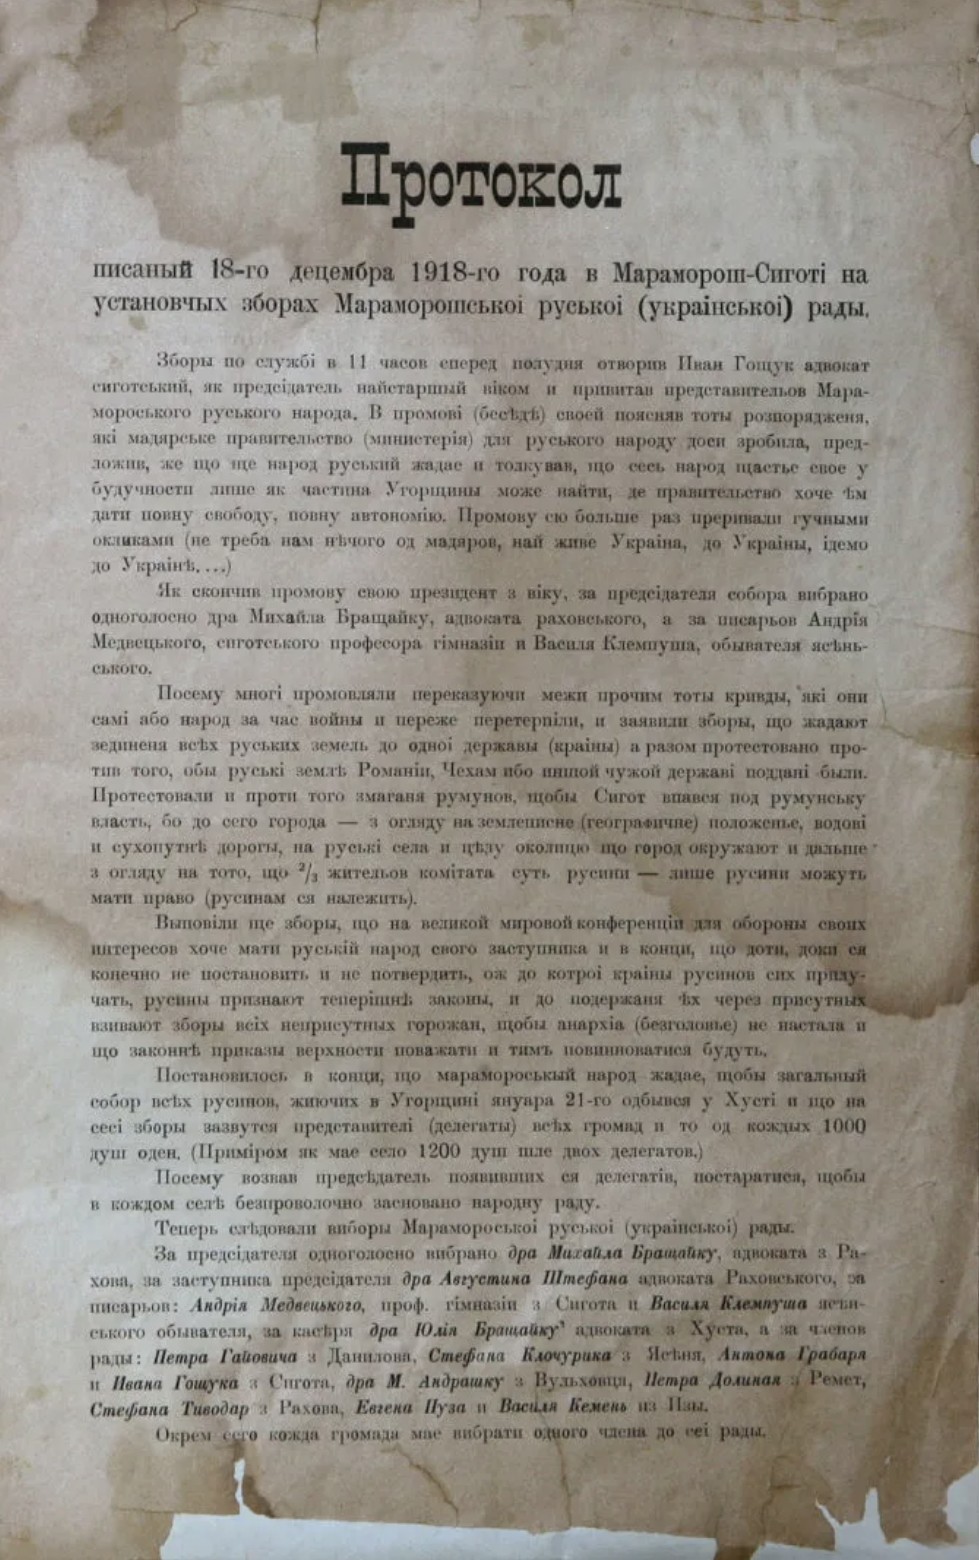 Короткый протокол Мараморошской Руськой Рады (Сигіт, 18. децембра 1918). Рада ся одбыла в політично неясній добі. 